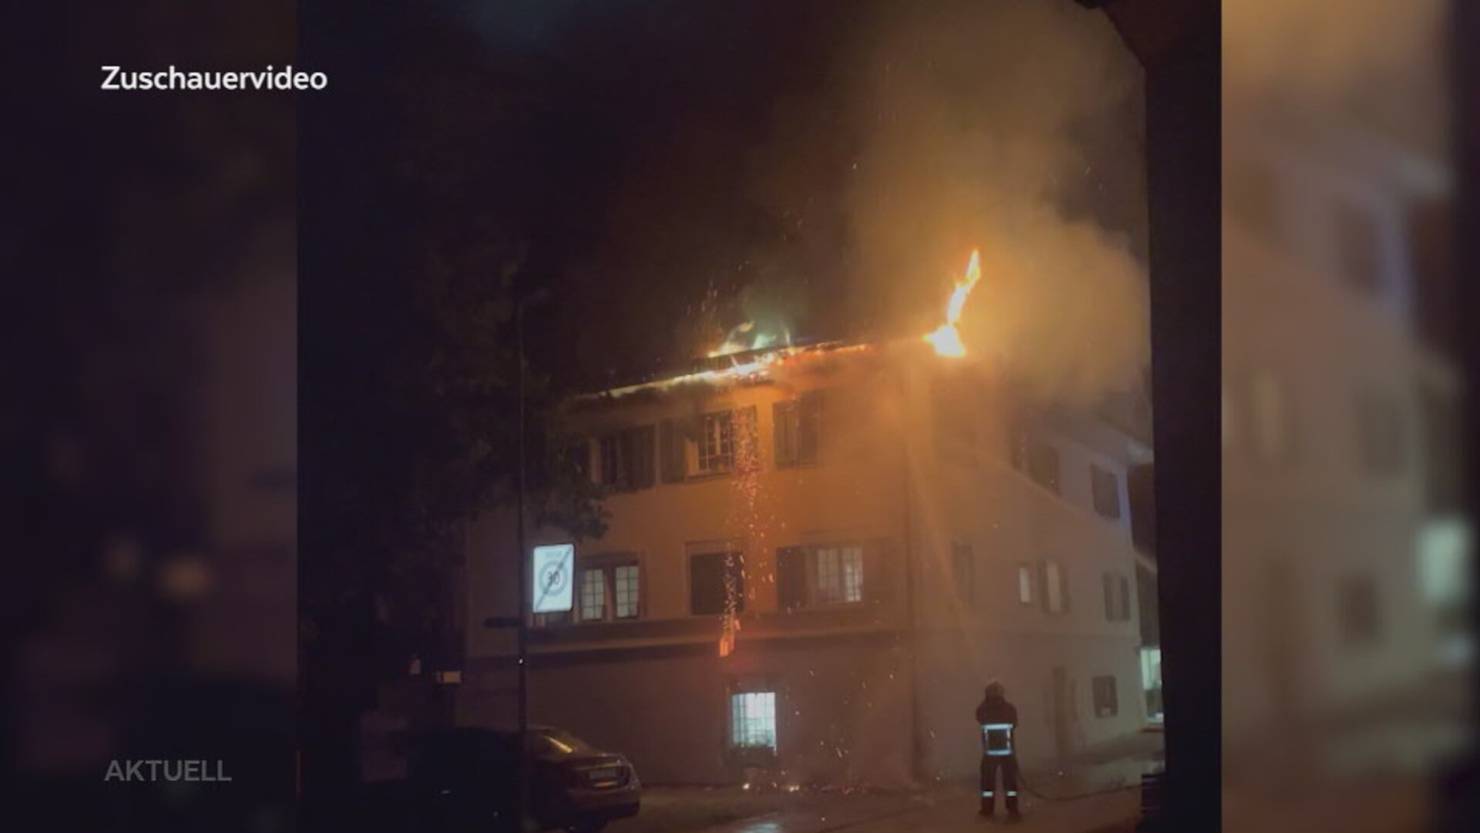 Grosser Schaden: Ein Brand in Merenschwand verletzt 8 Personen, eine davon schwer | TeleM1